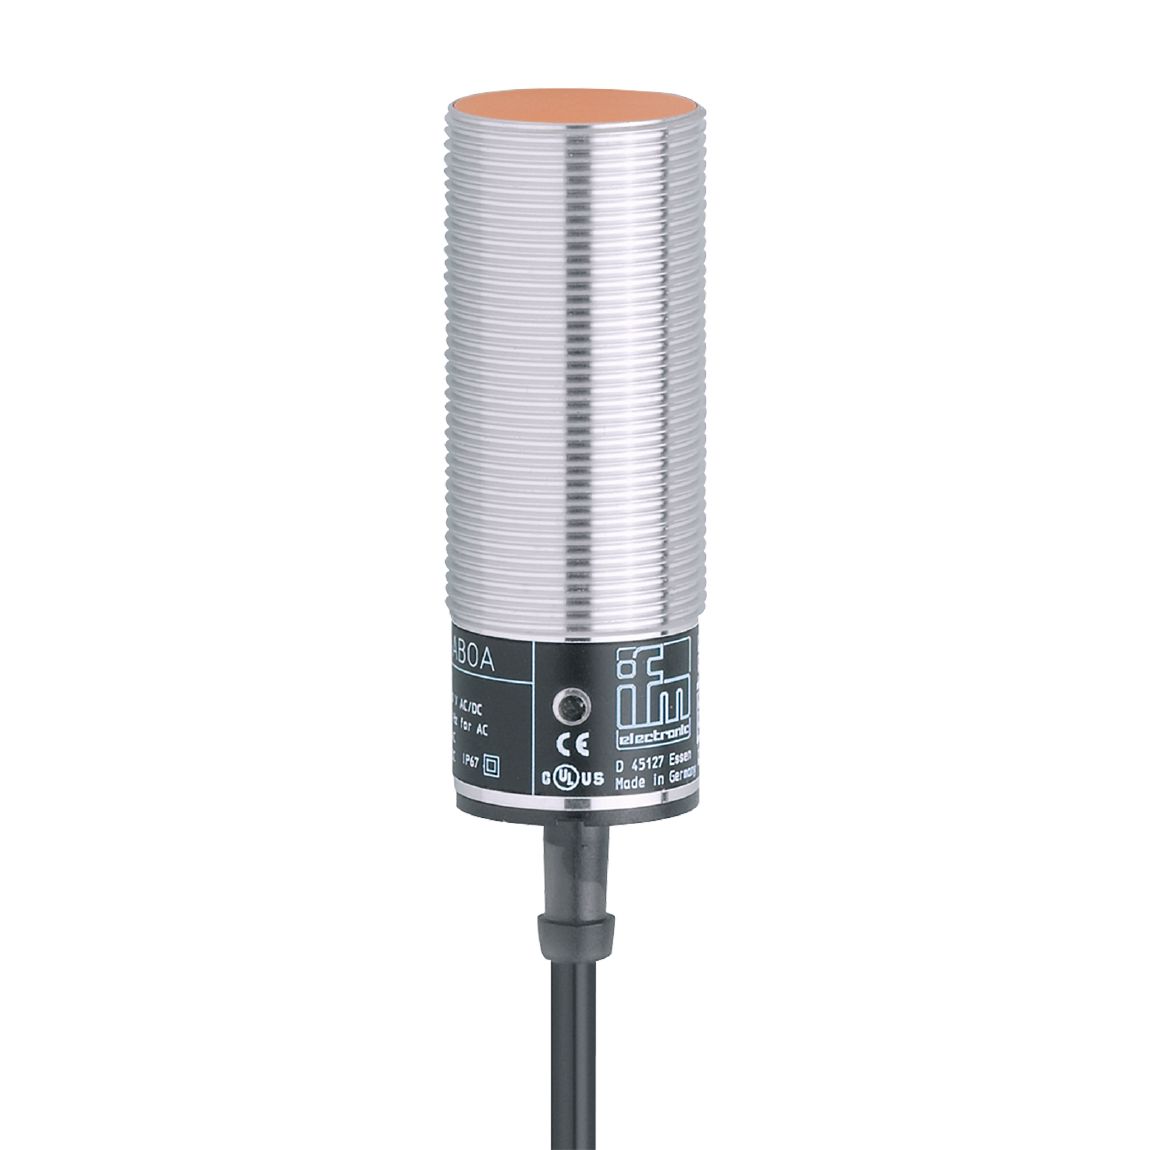 II5264 - Inductive sensor - ifm